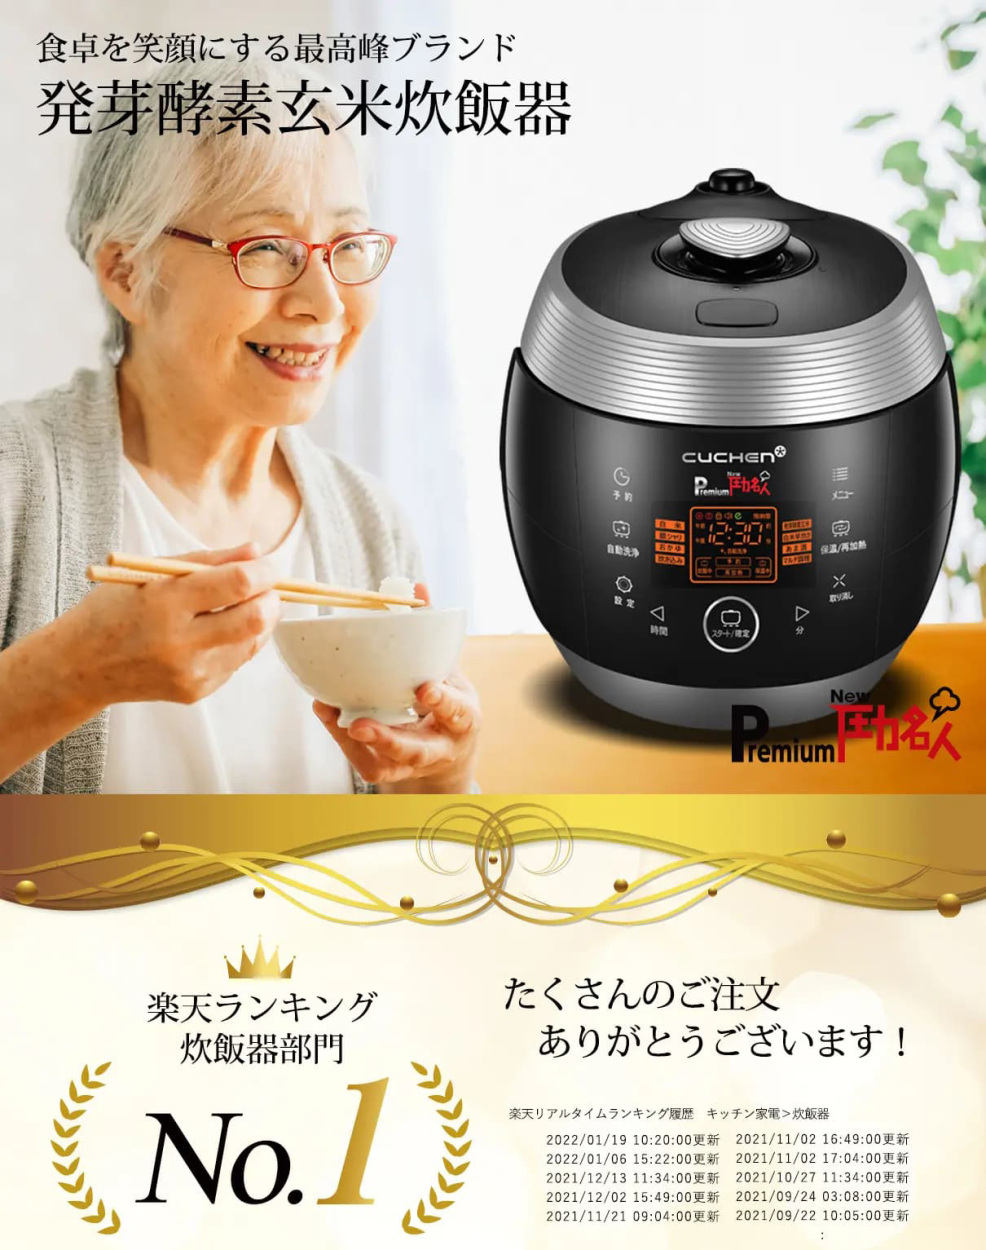 玄米炊飯器 Premium New 圧力名人 3年保証 正規代理店 レシピ本・専用